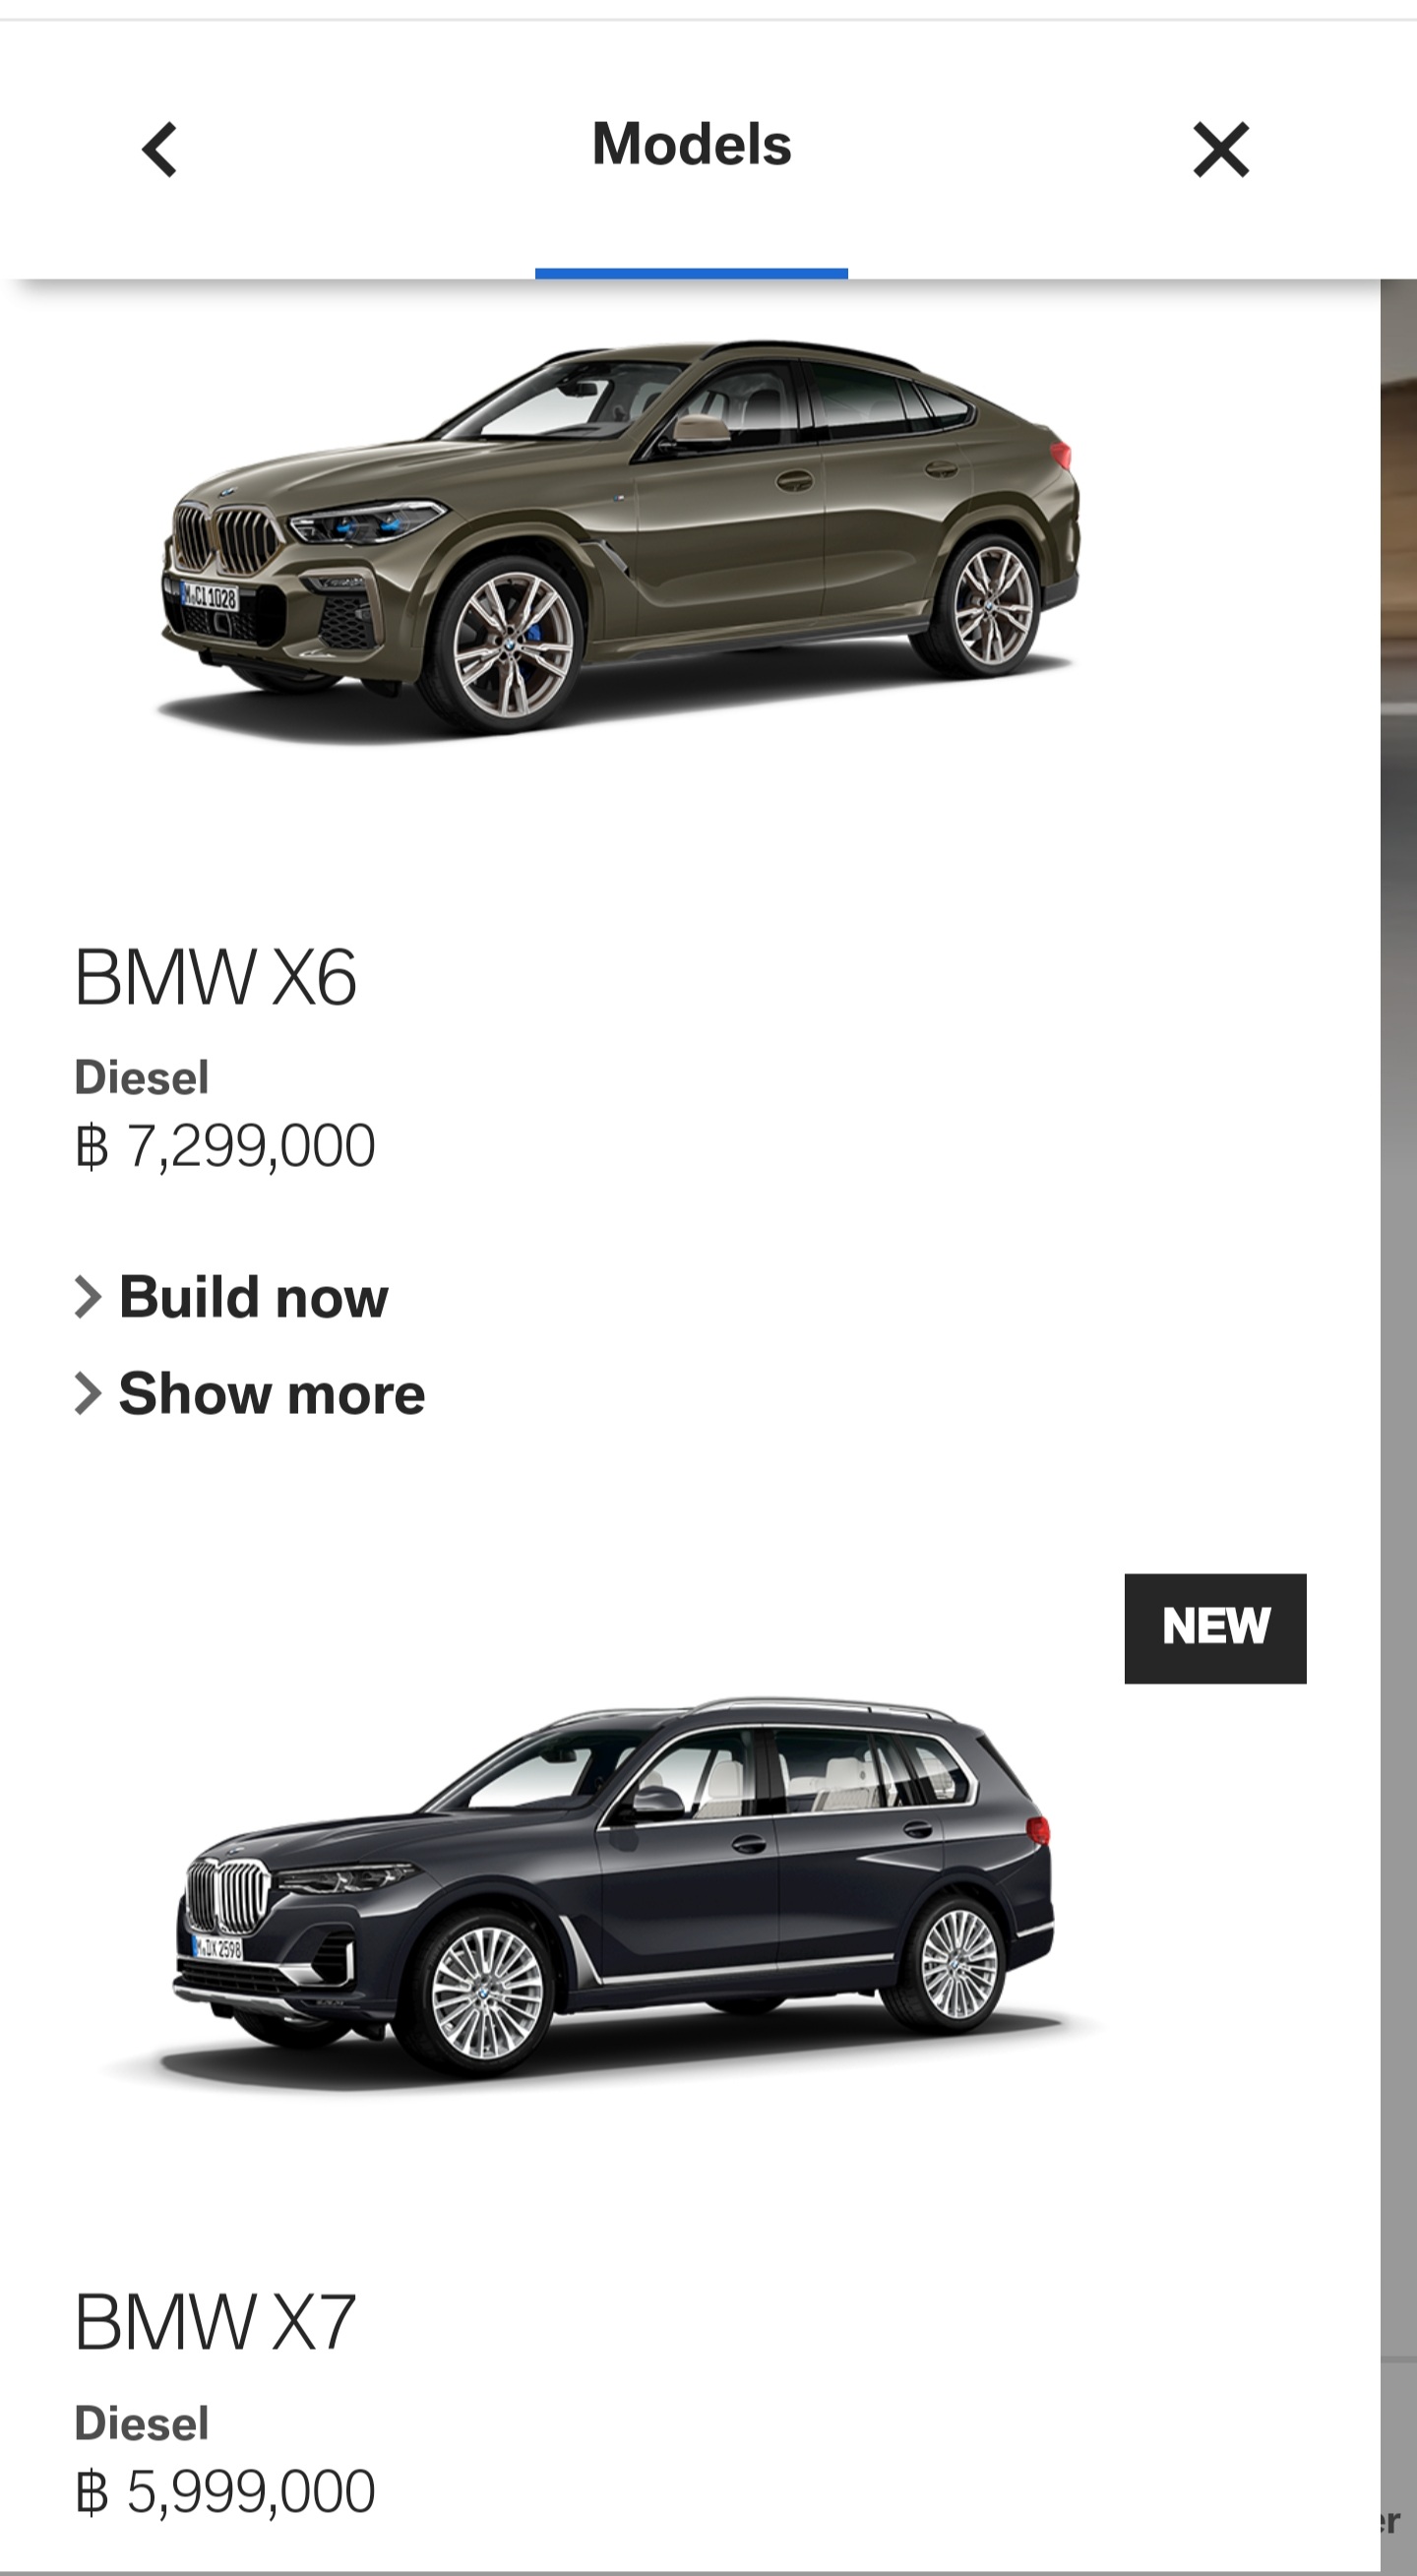 ทำไม BMW X6 ในไทยถึงแพงกว่า X7 ทั้งที่เมืองนอก X7 แพงกว่าเยอะเลยครับ? -  Pantip